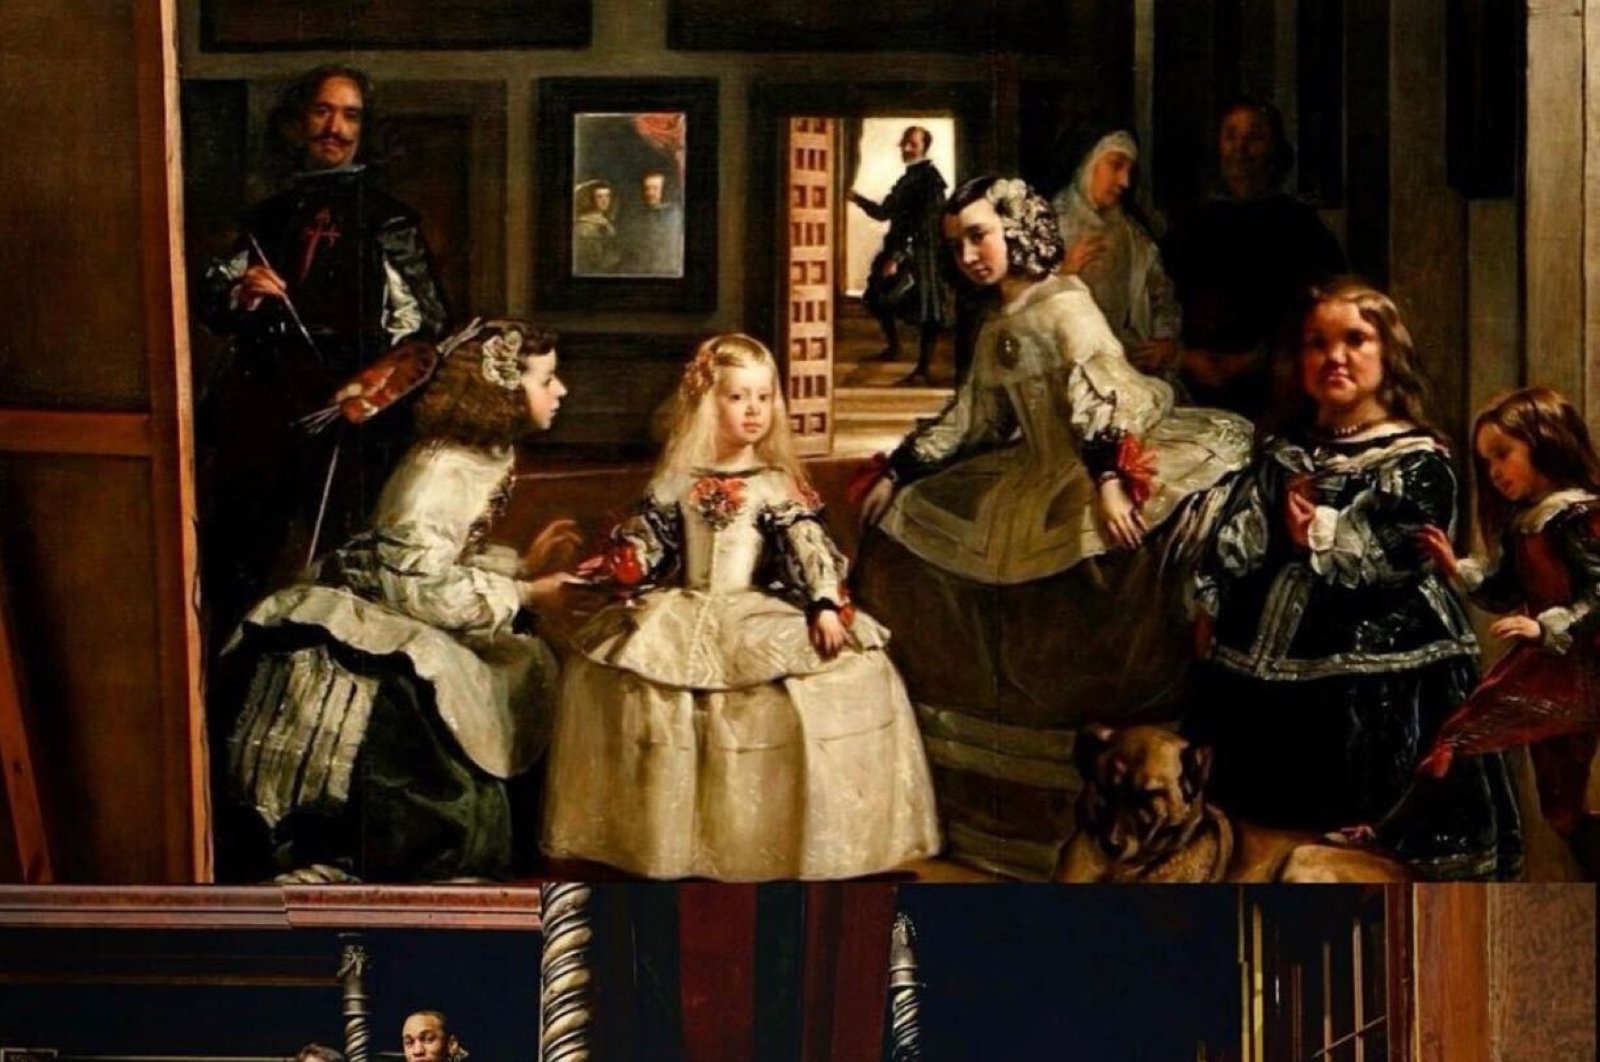 Bertemu aktor Opera mengedipkan mata pada lukisan terkenal Velazquez